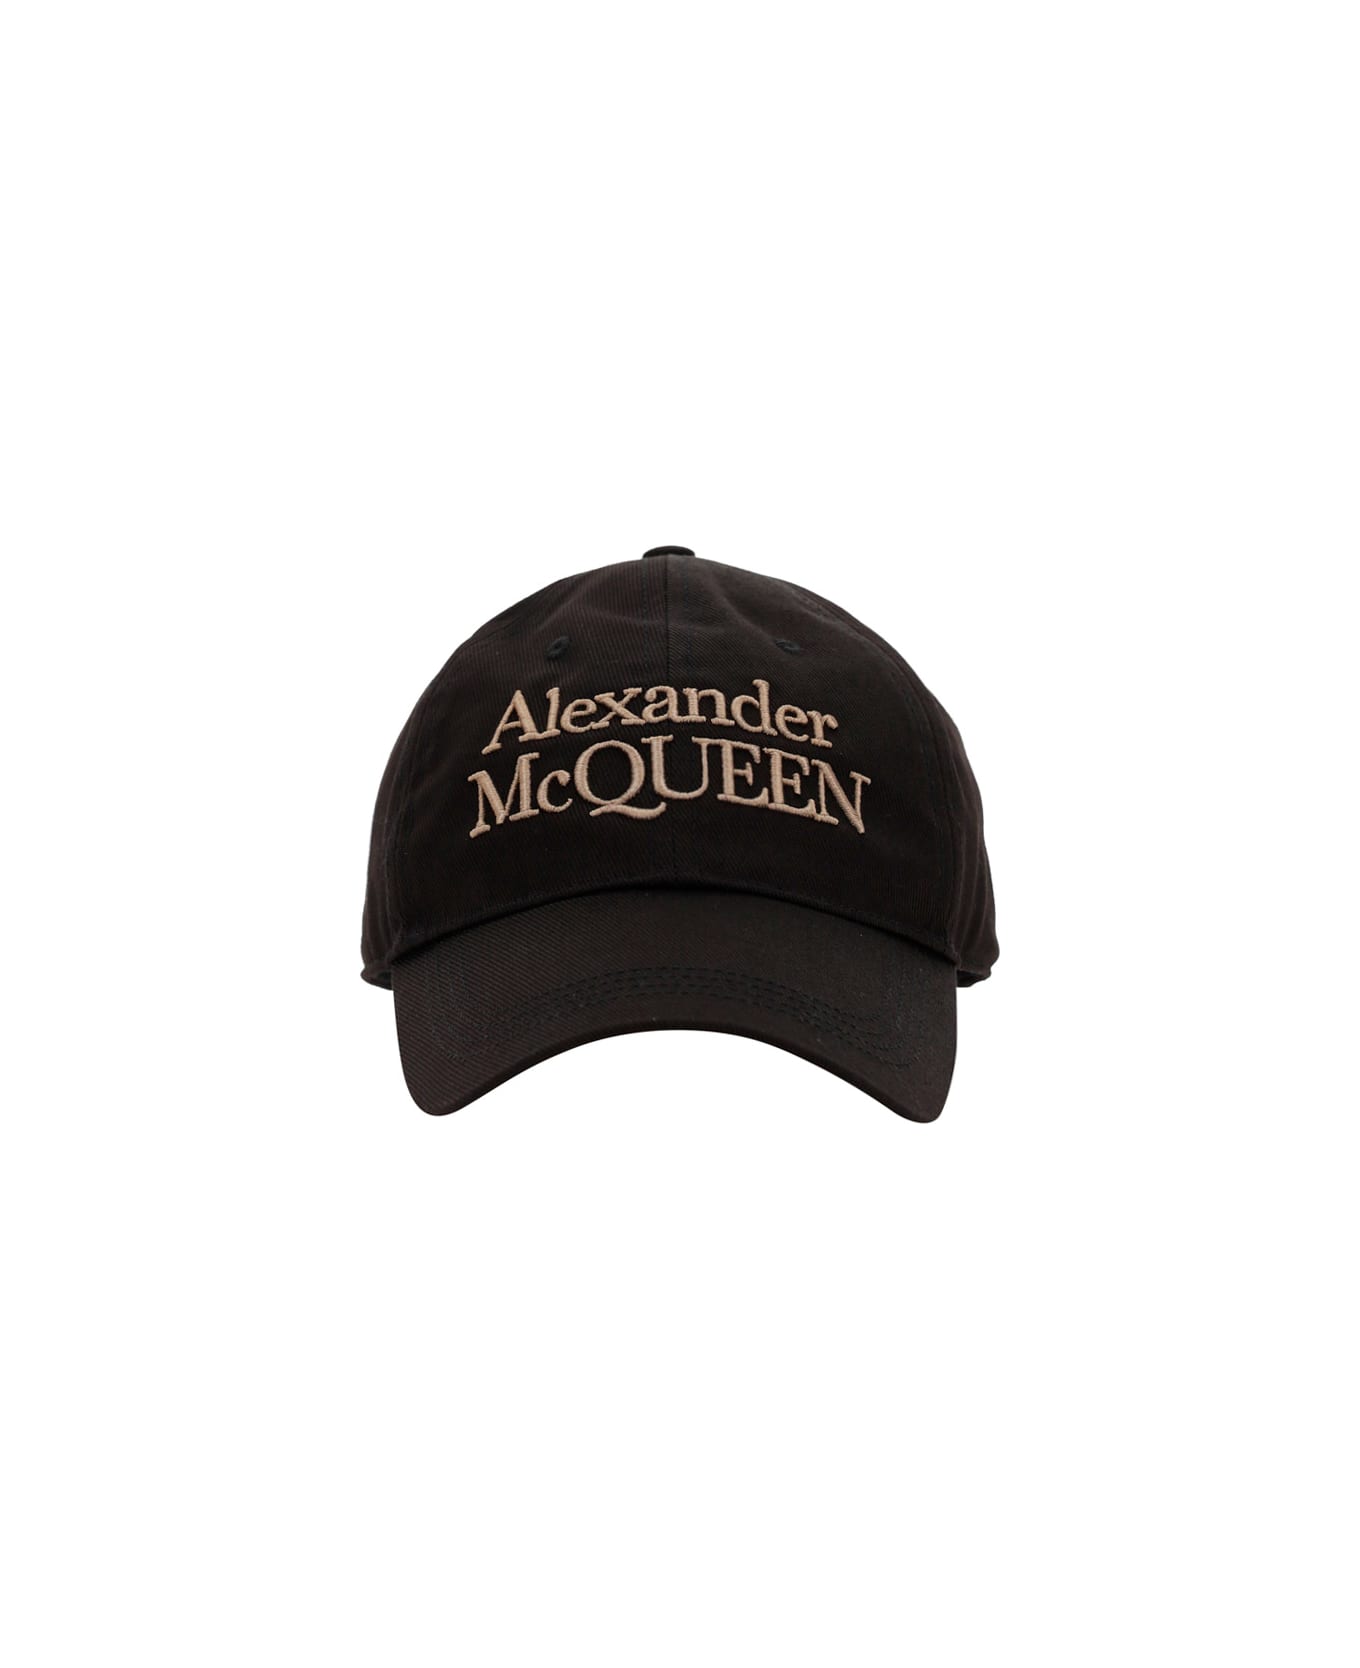 Alexander McQueen Hat - Black/beige